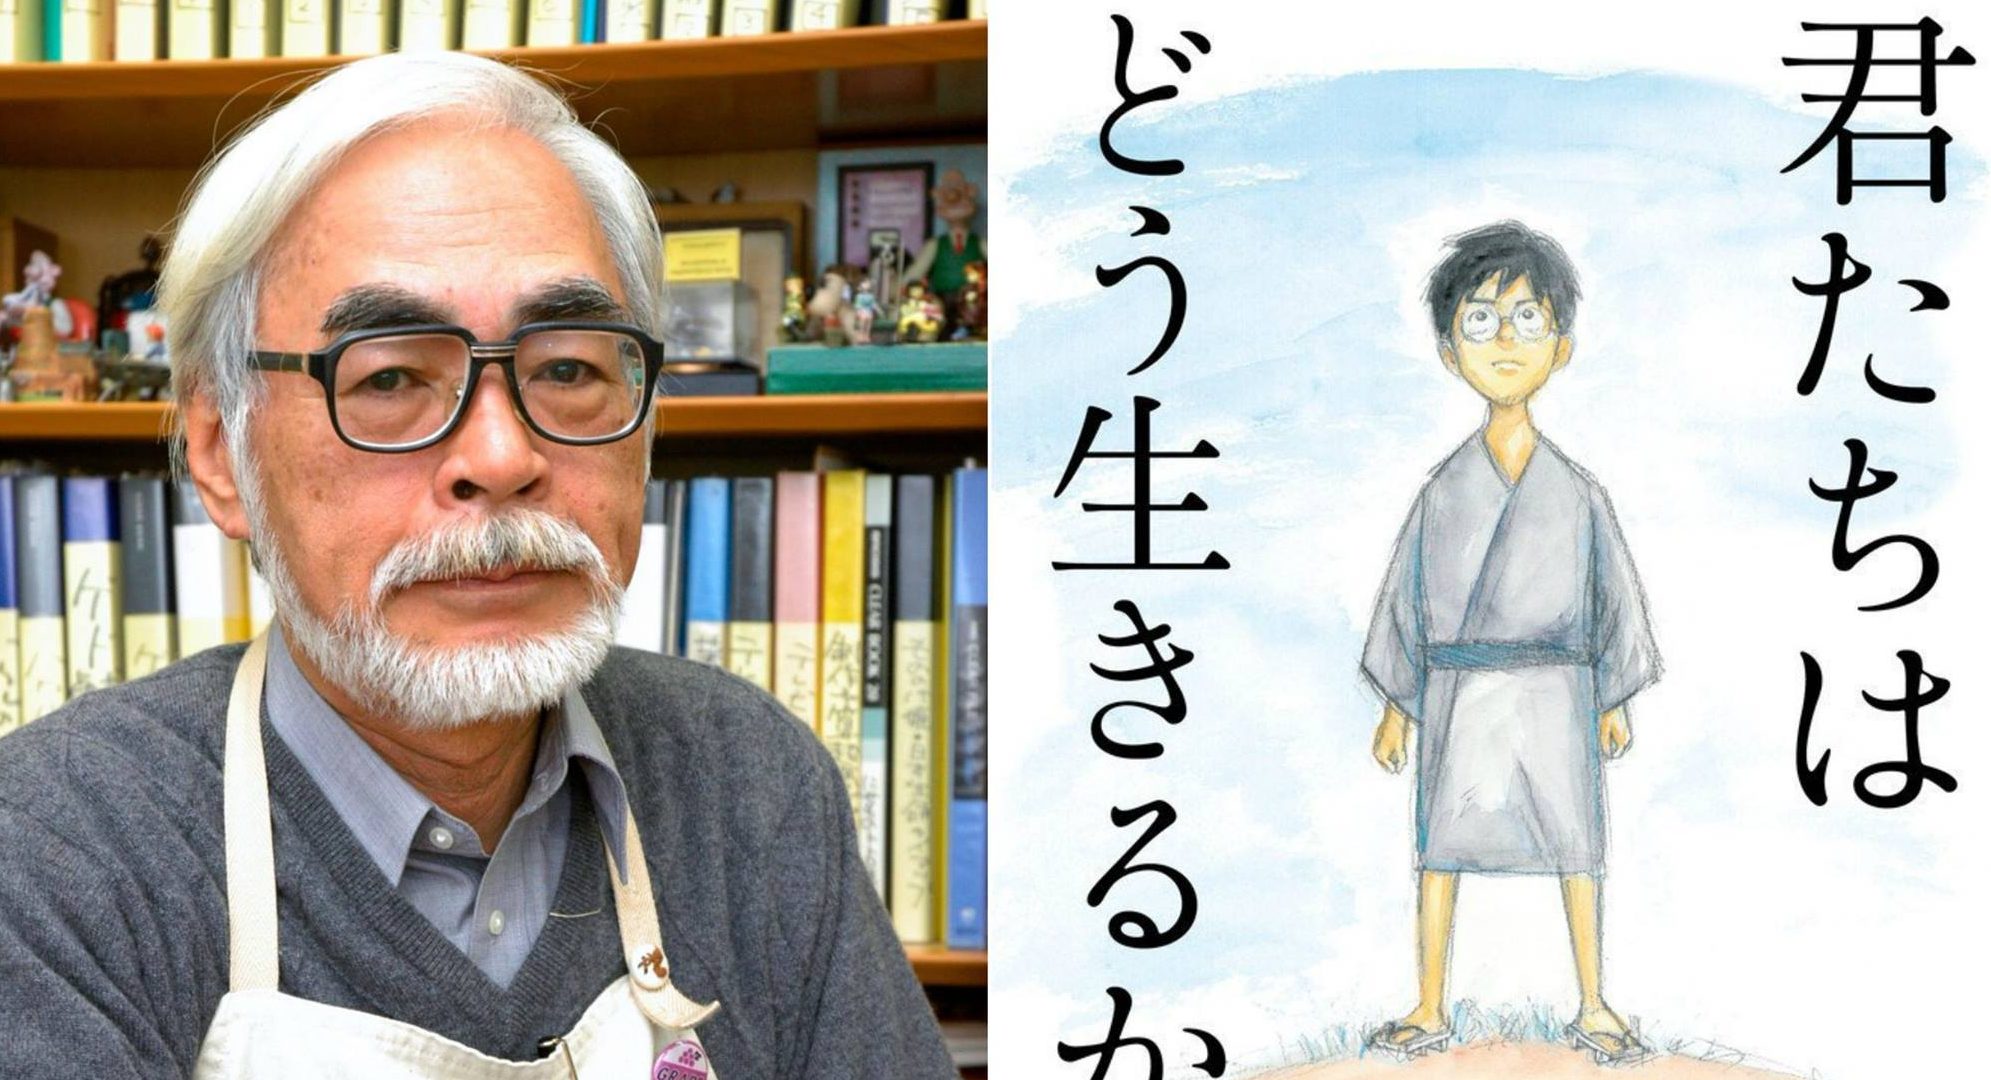 Студия Ghibli полностью откажется от маркетинговой кампании для нового аниме от Хаяо Миядзаки